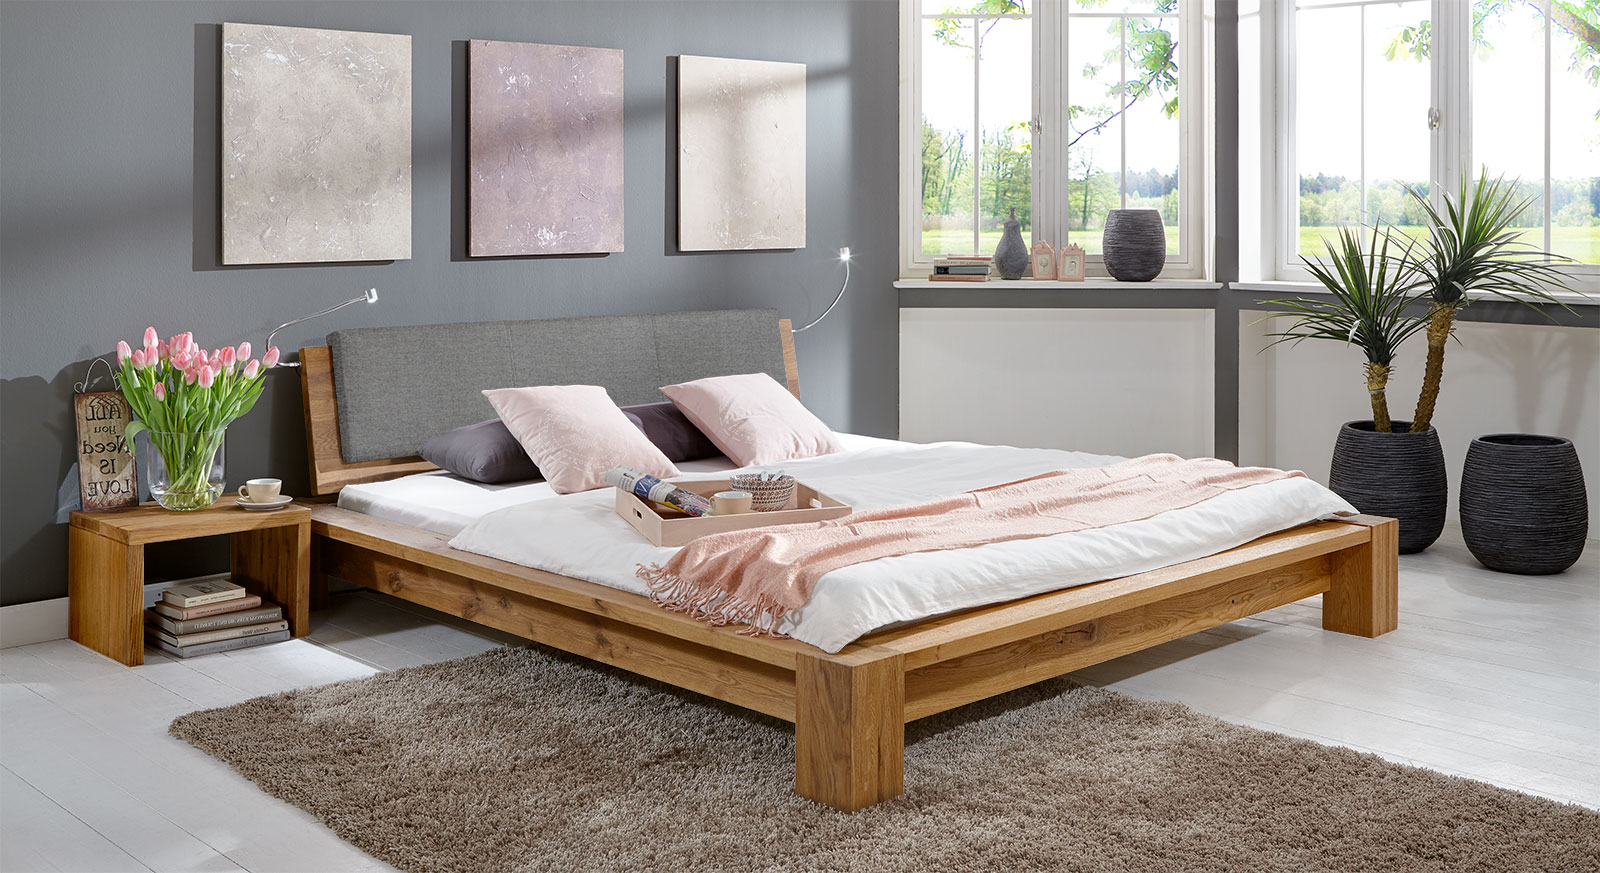 Massivholz-Bett mit Holz-Kopfteil aus geölter Wildeiche - Domingo